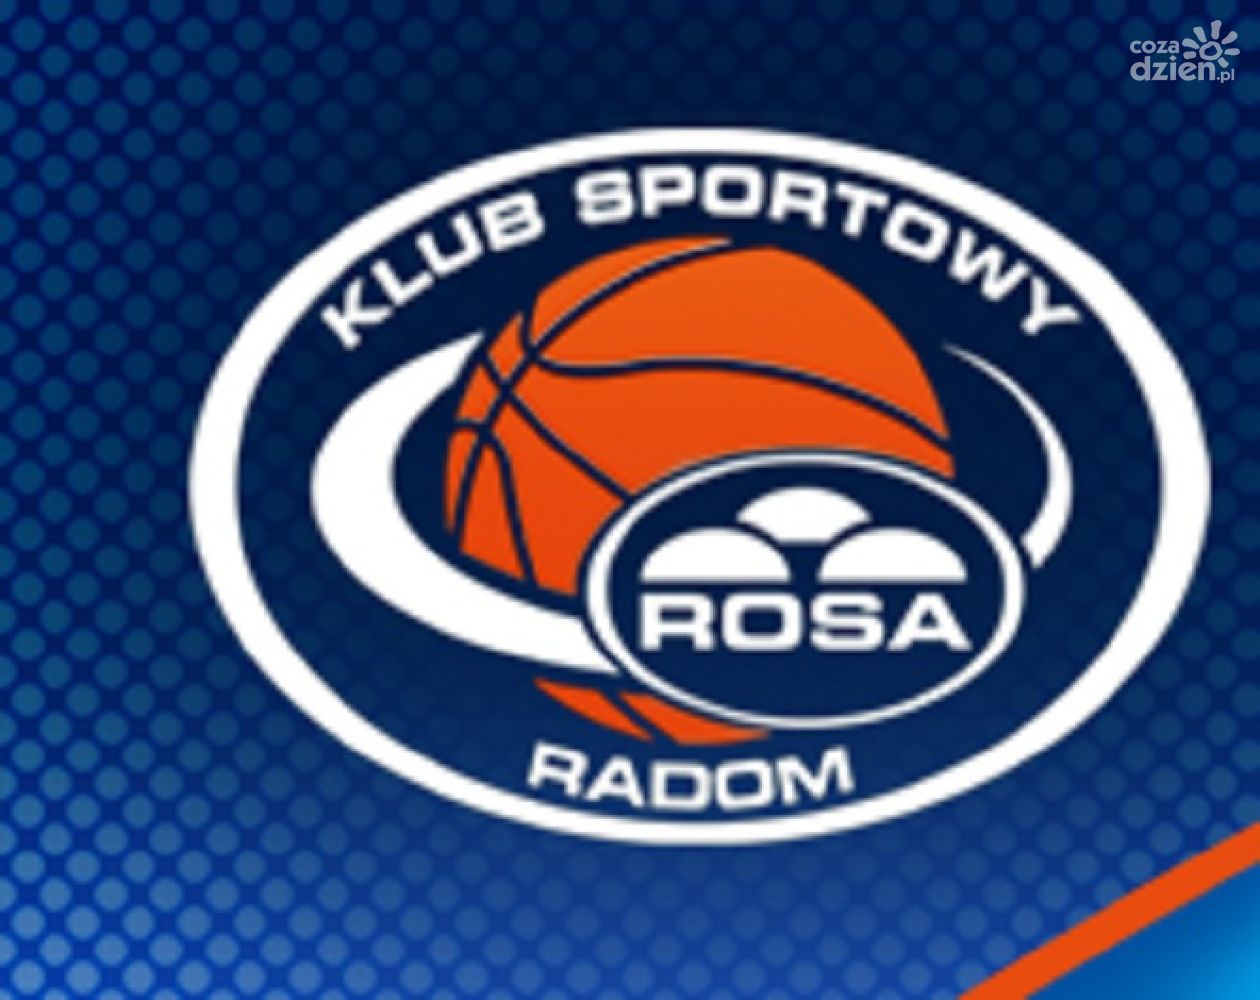 Rosa rozpoczyna przygotowania do Tauron Basket Ligi